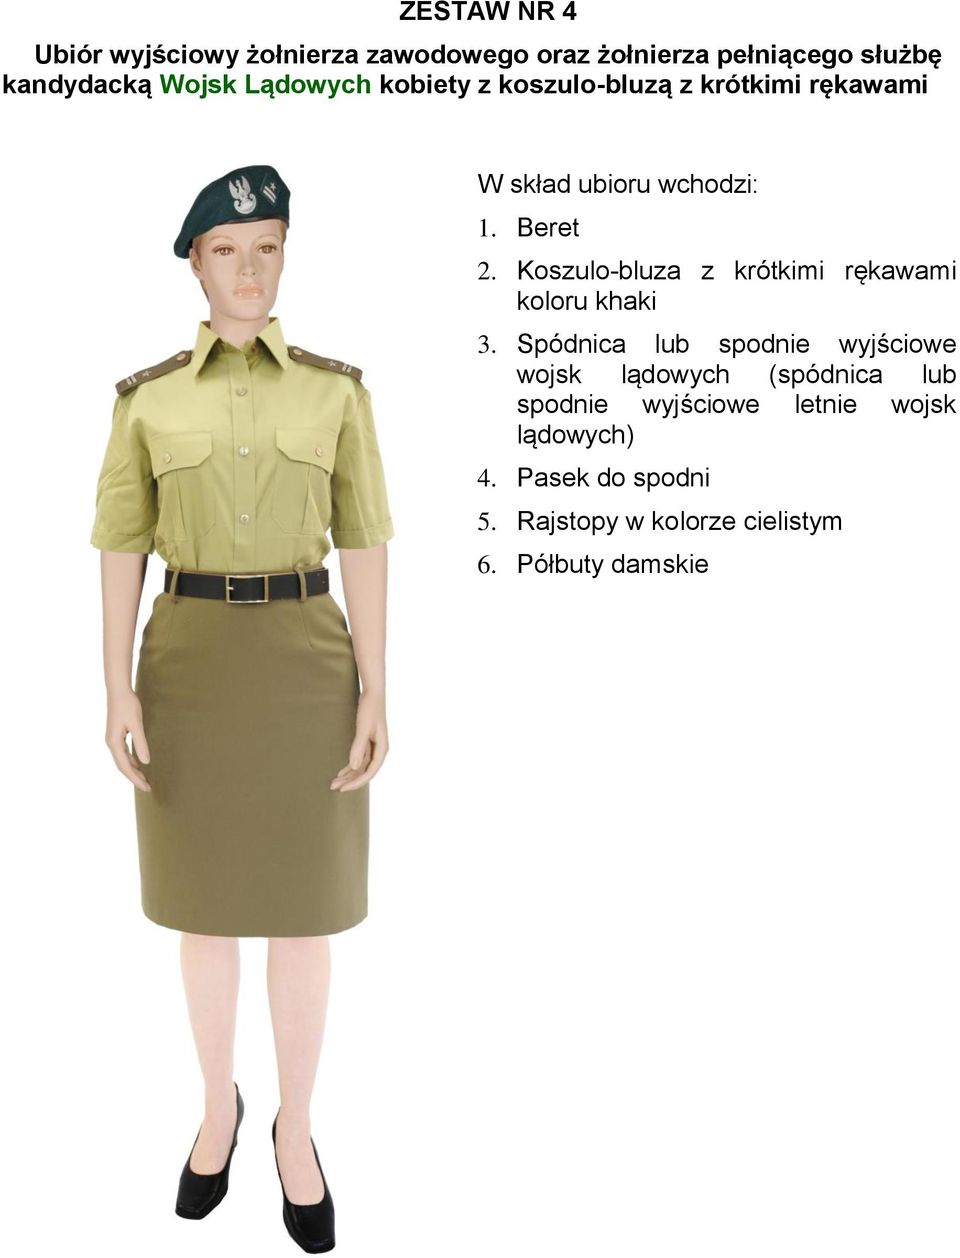 Spódnica lub spodnie wyjściowe wojsk lądowych (spódnica lub spodnie